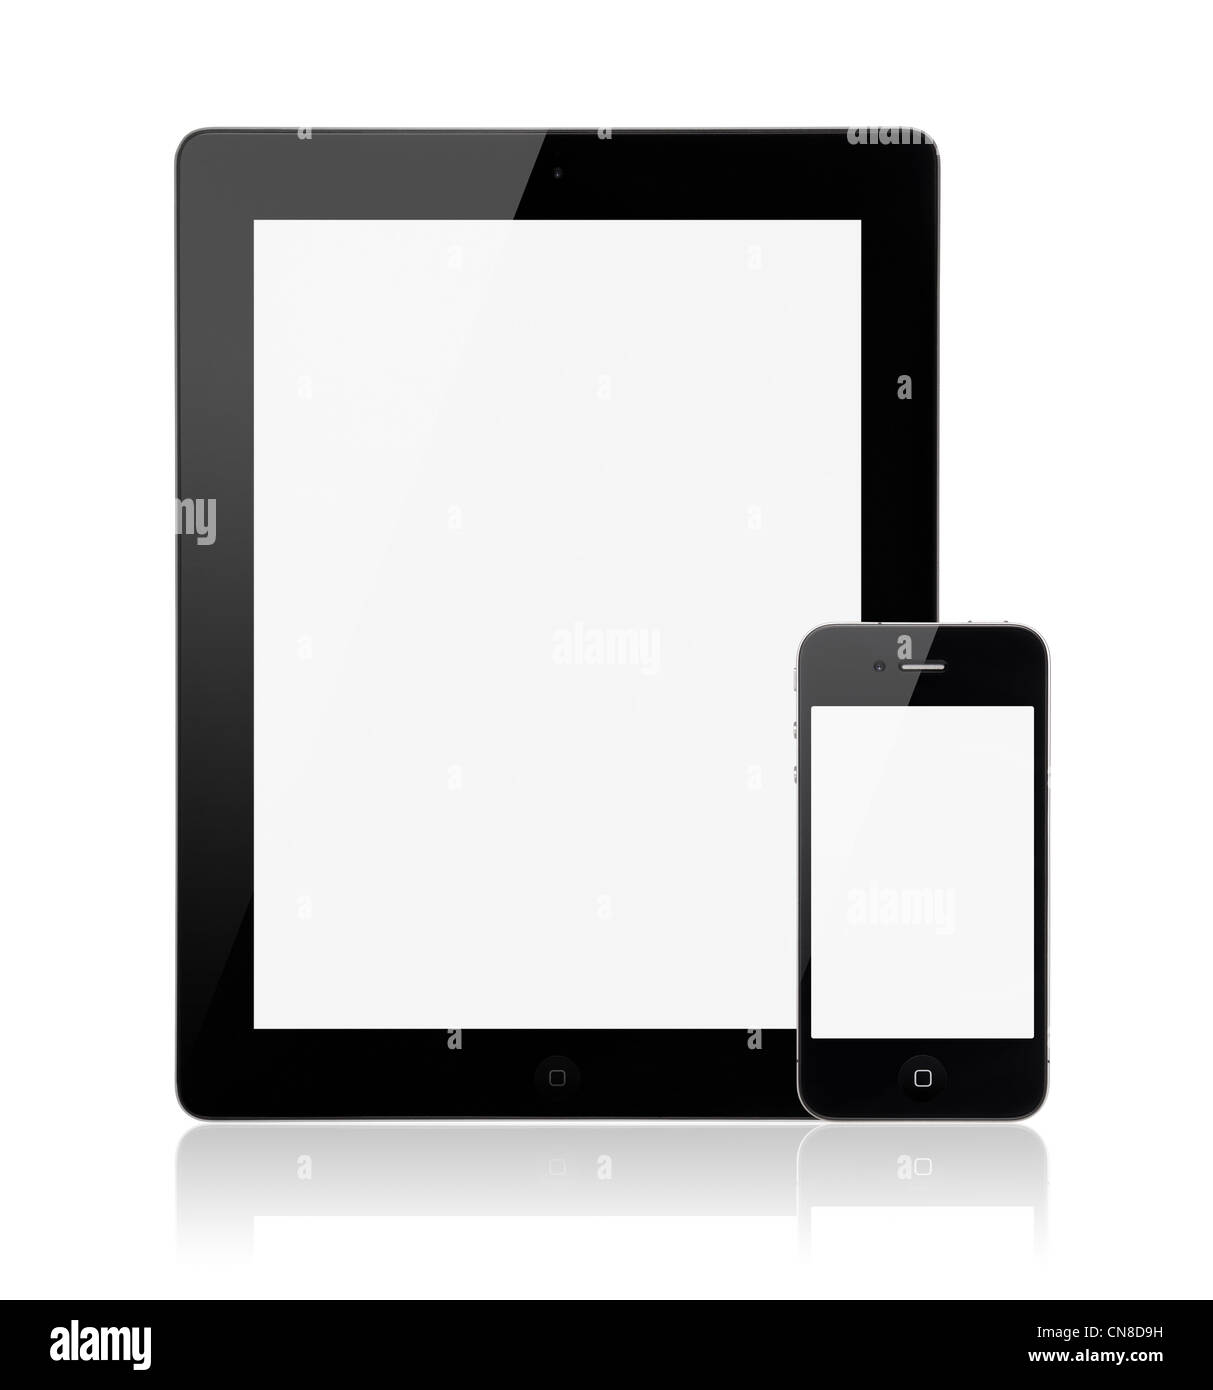 Ein neues Apple iPad 3. Generation mit Apple iPhone 4 s auf einem weißen Hintergrund mit einem leeren Bildschirm. Stockfoto